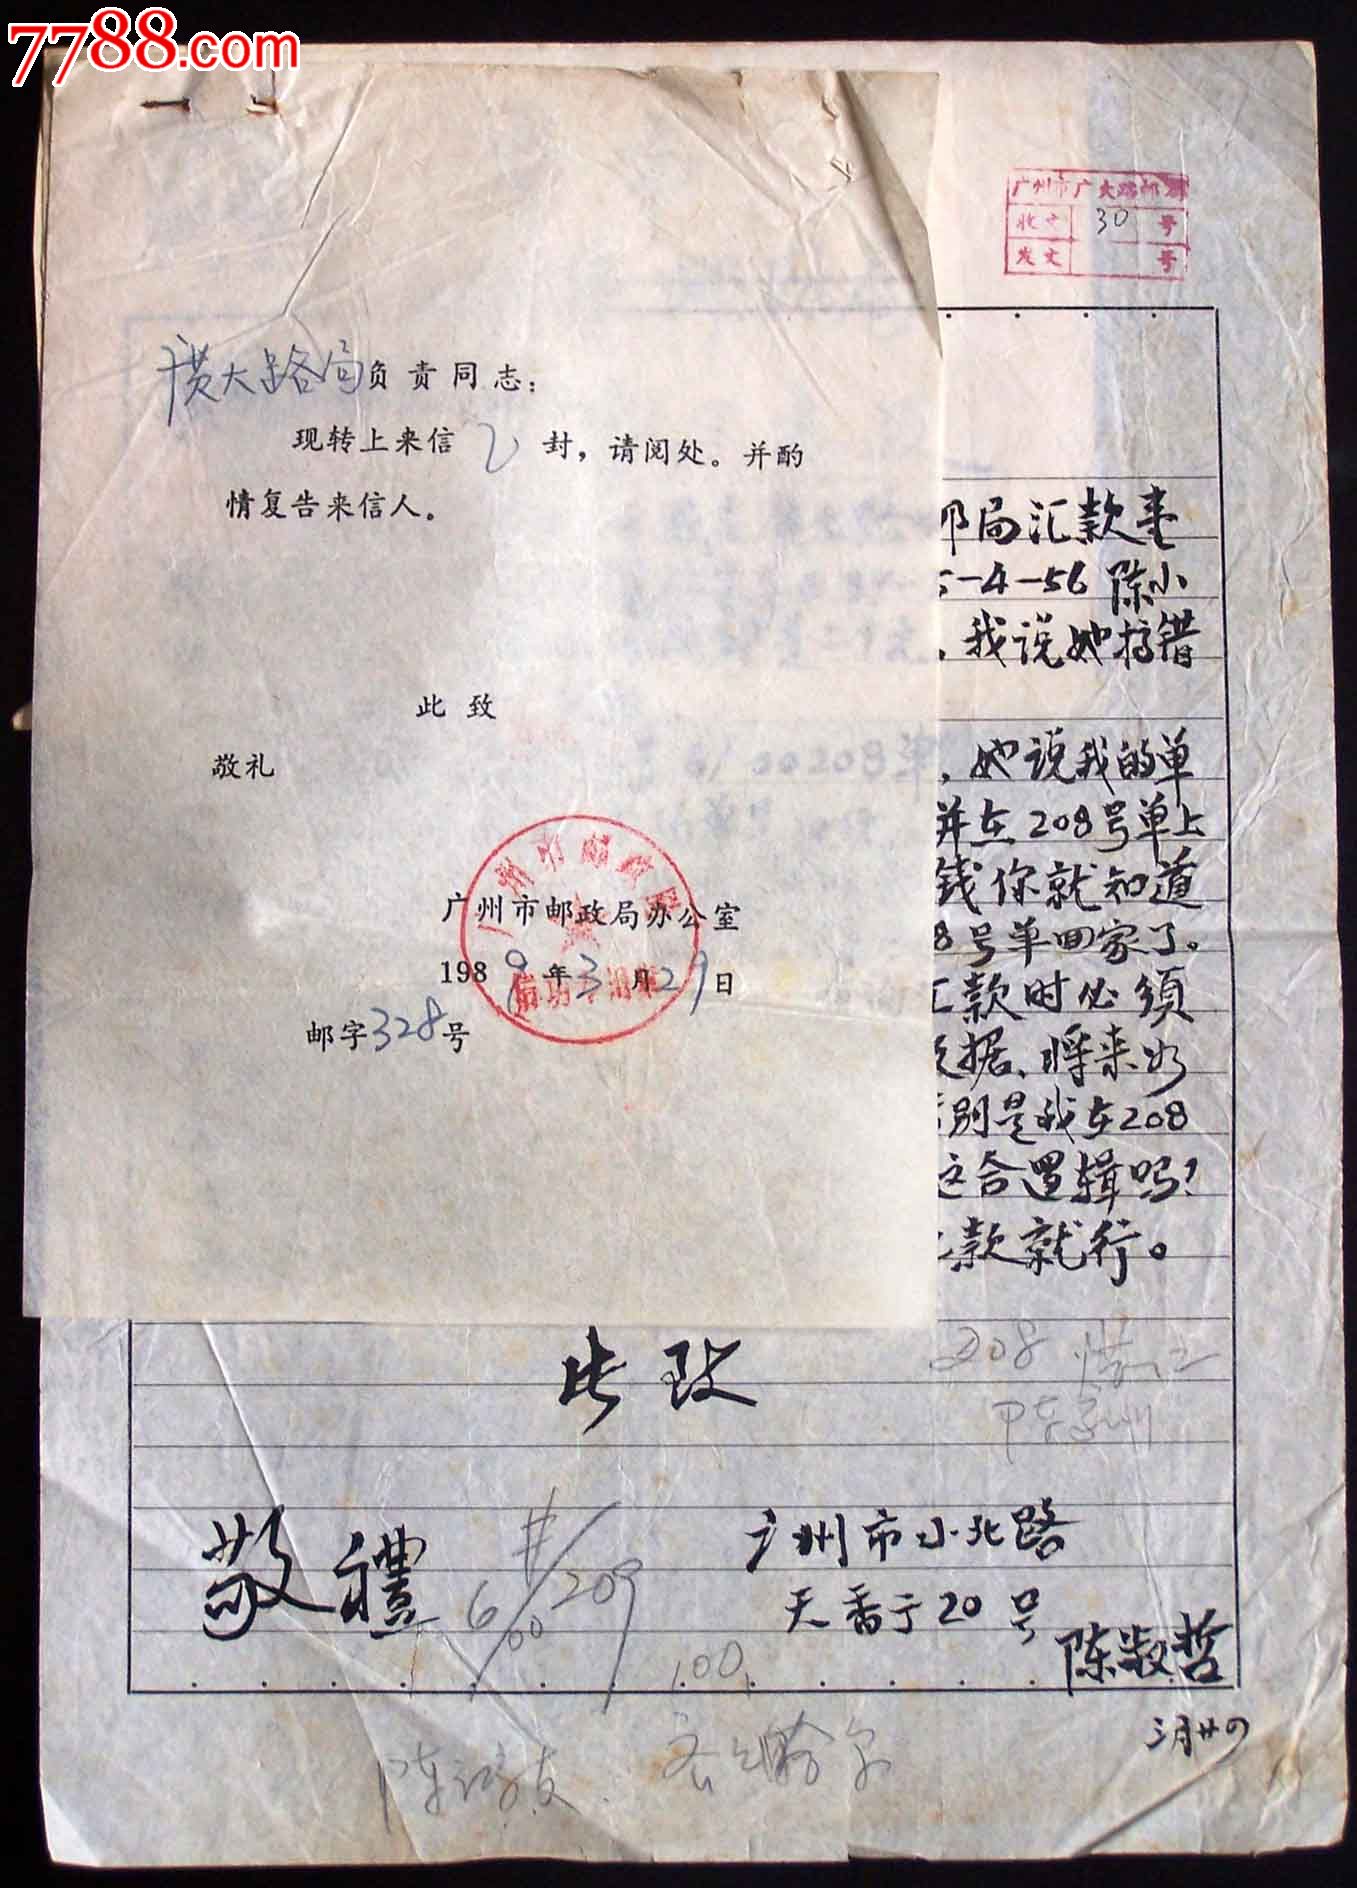 文献-89年广州邮局处理投诉邮件-价格:200